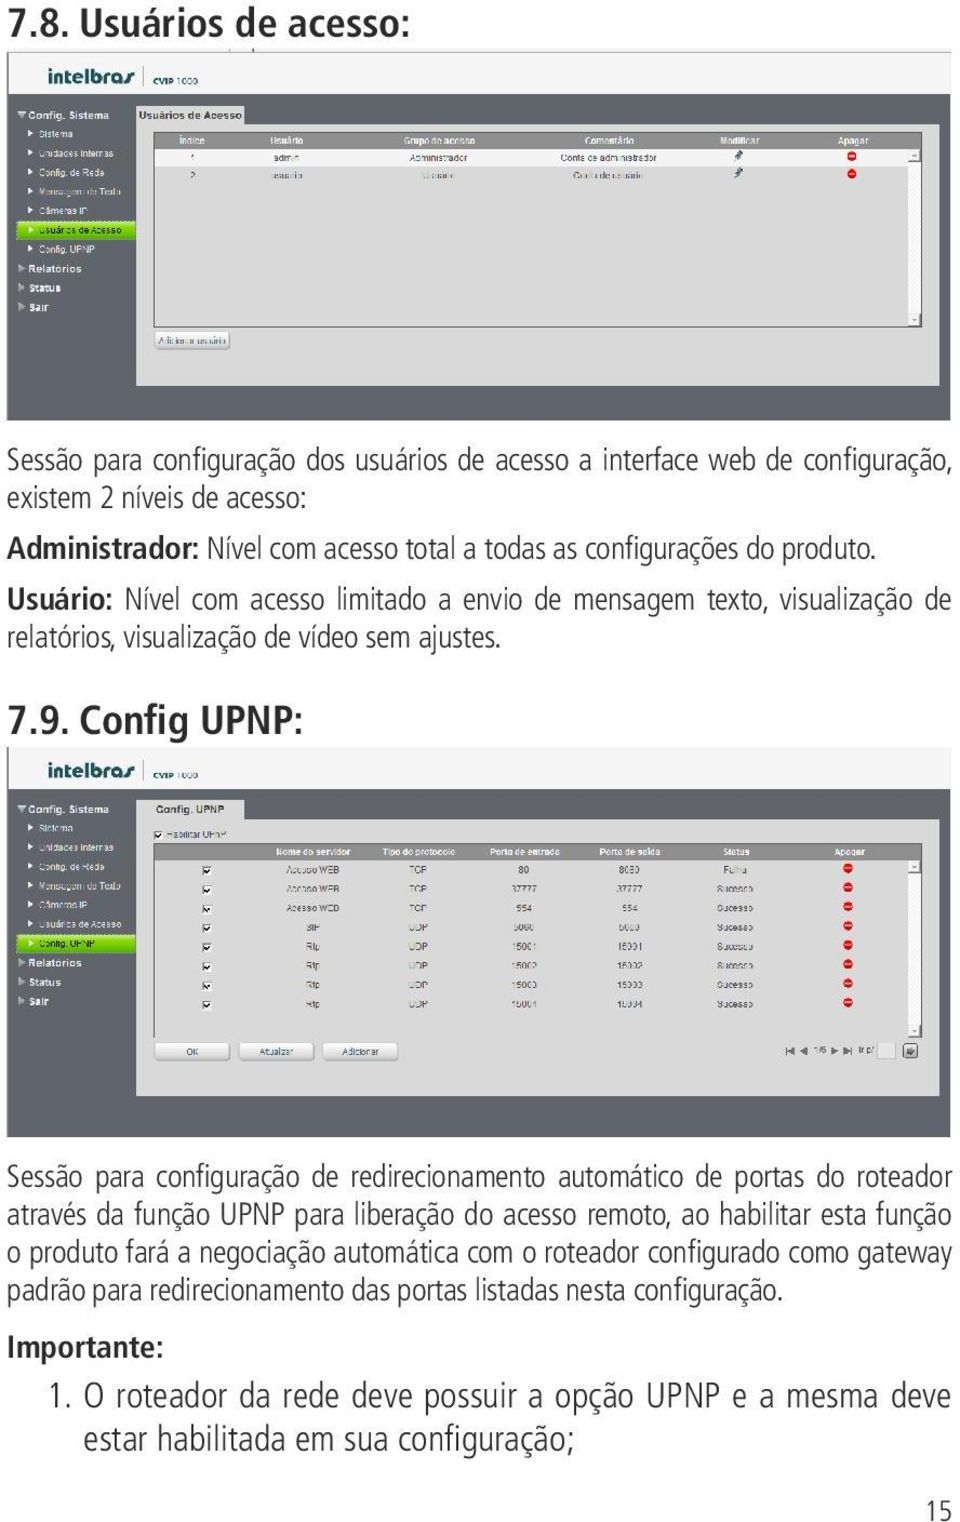 Config UPNP: Sessão para configuração de redirecionamento automático de portas do roteador através da função UPNP para liberação do acesso remoto, ao habilitar esta função o produto fará a